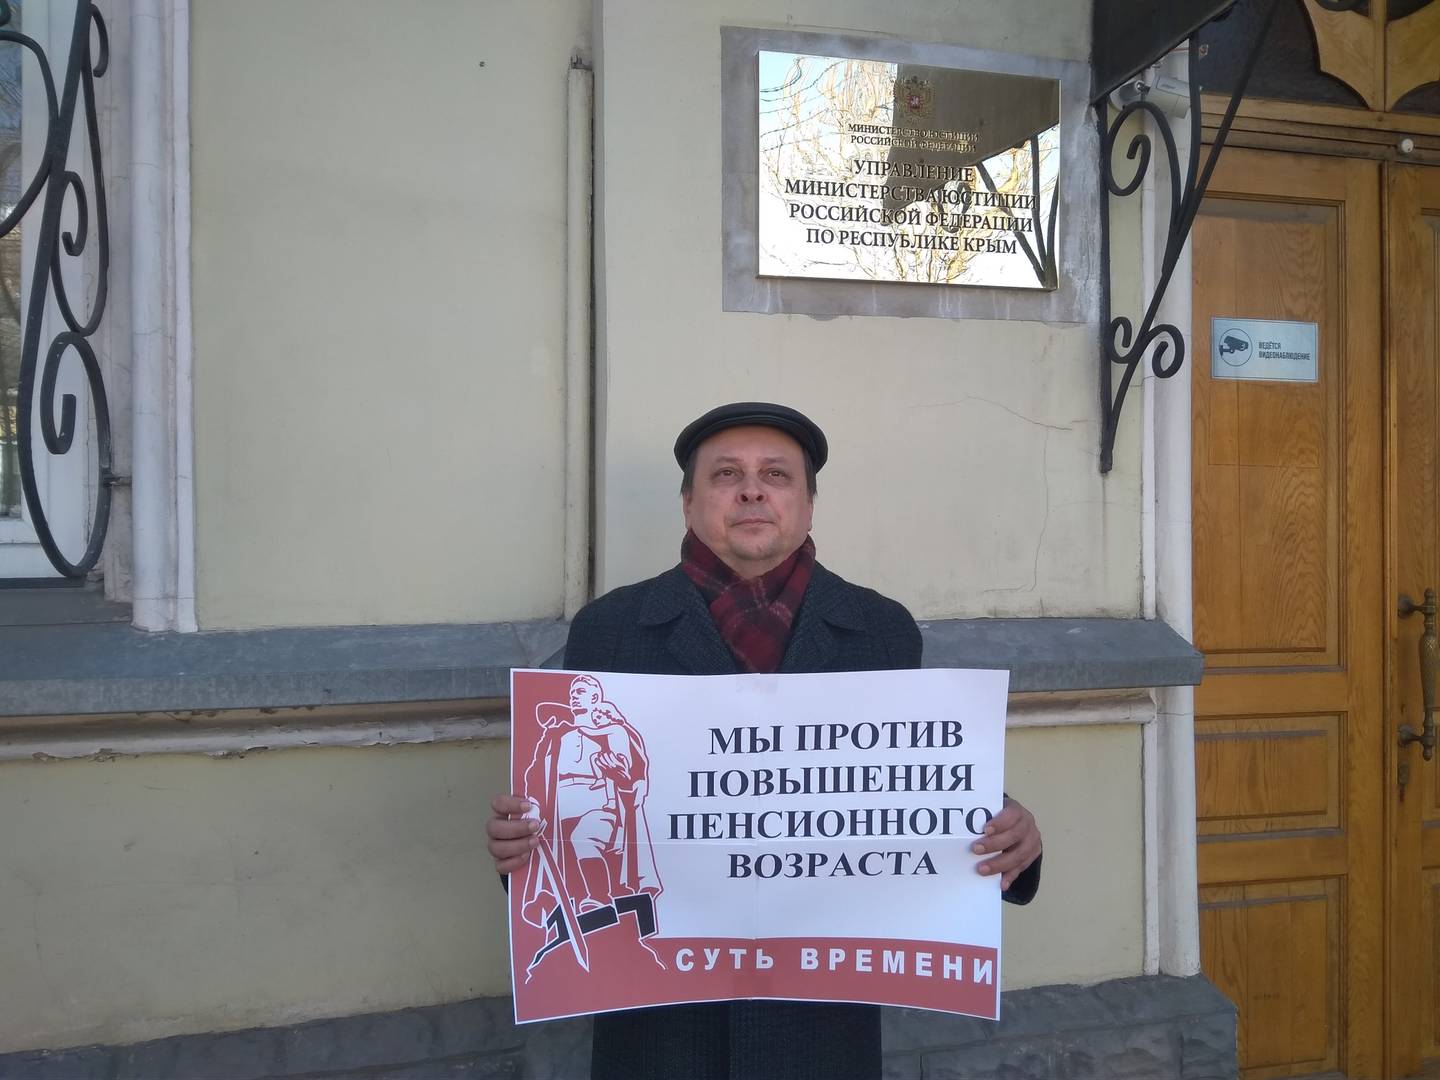 Пикет против пенсионной реформы. Симферополь